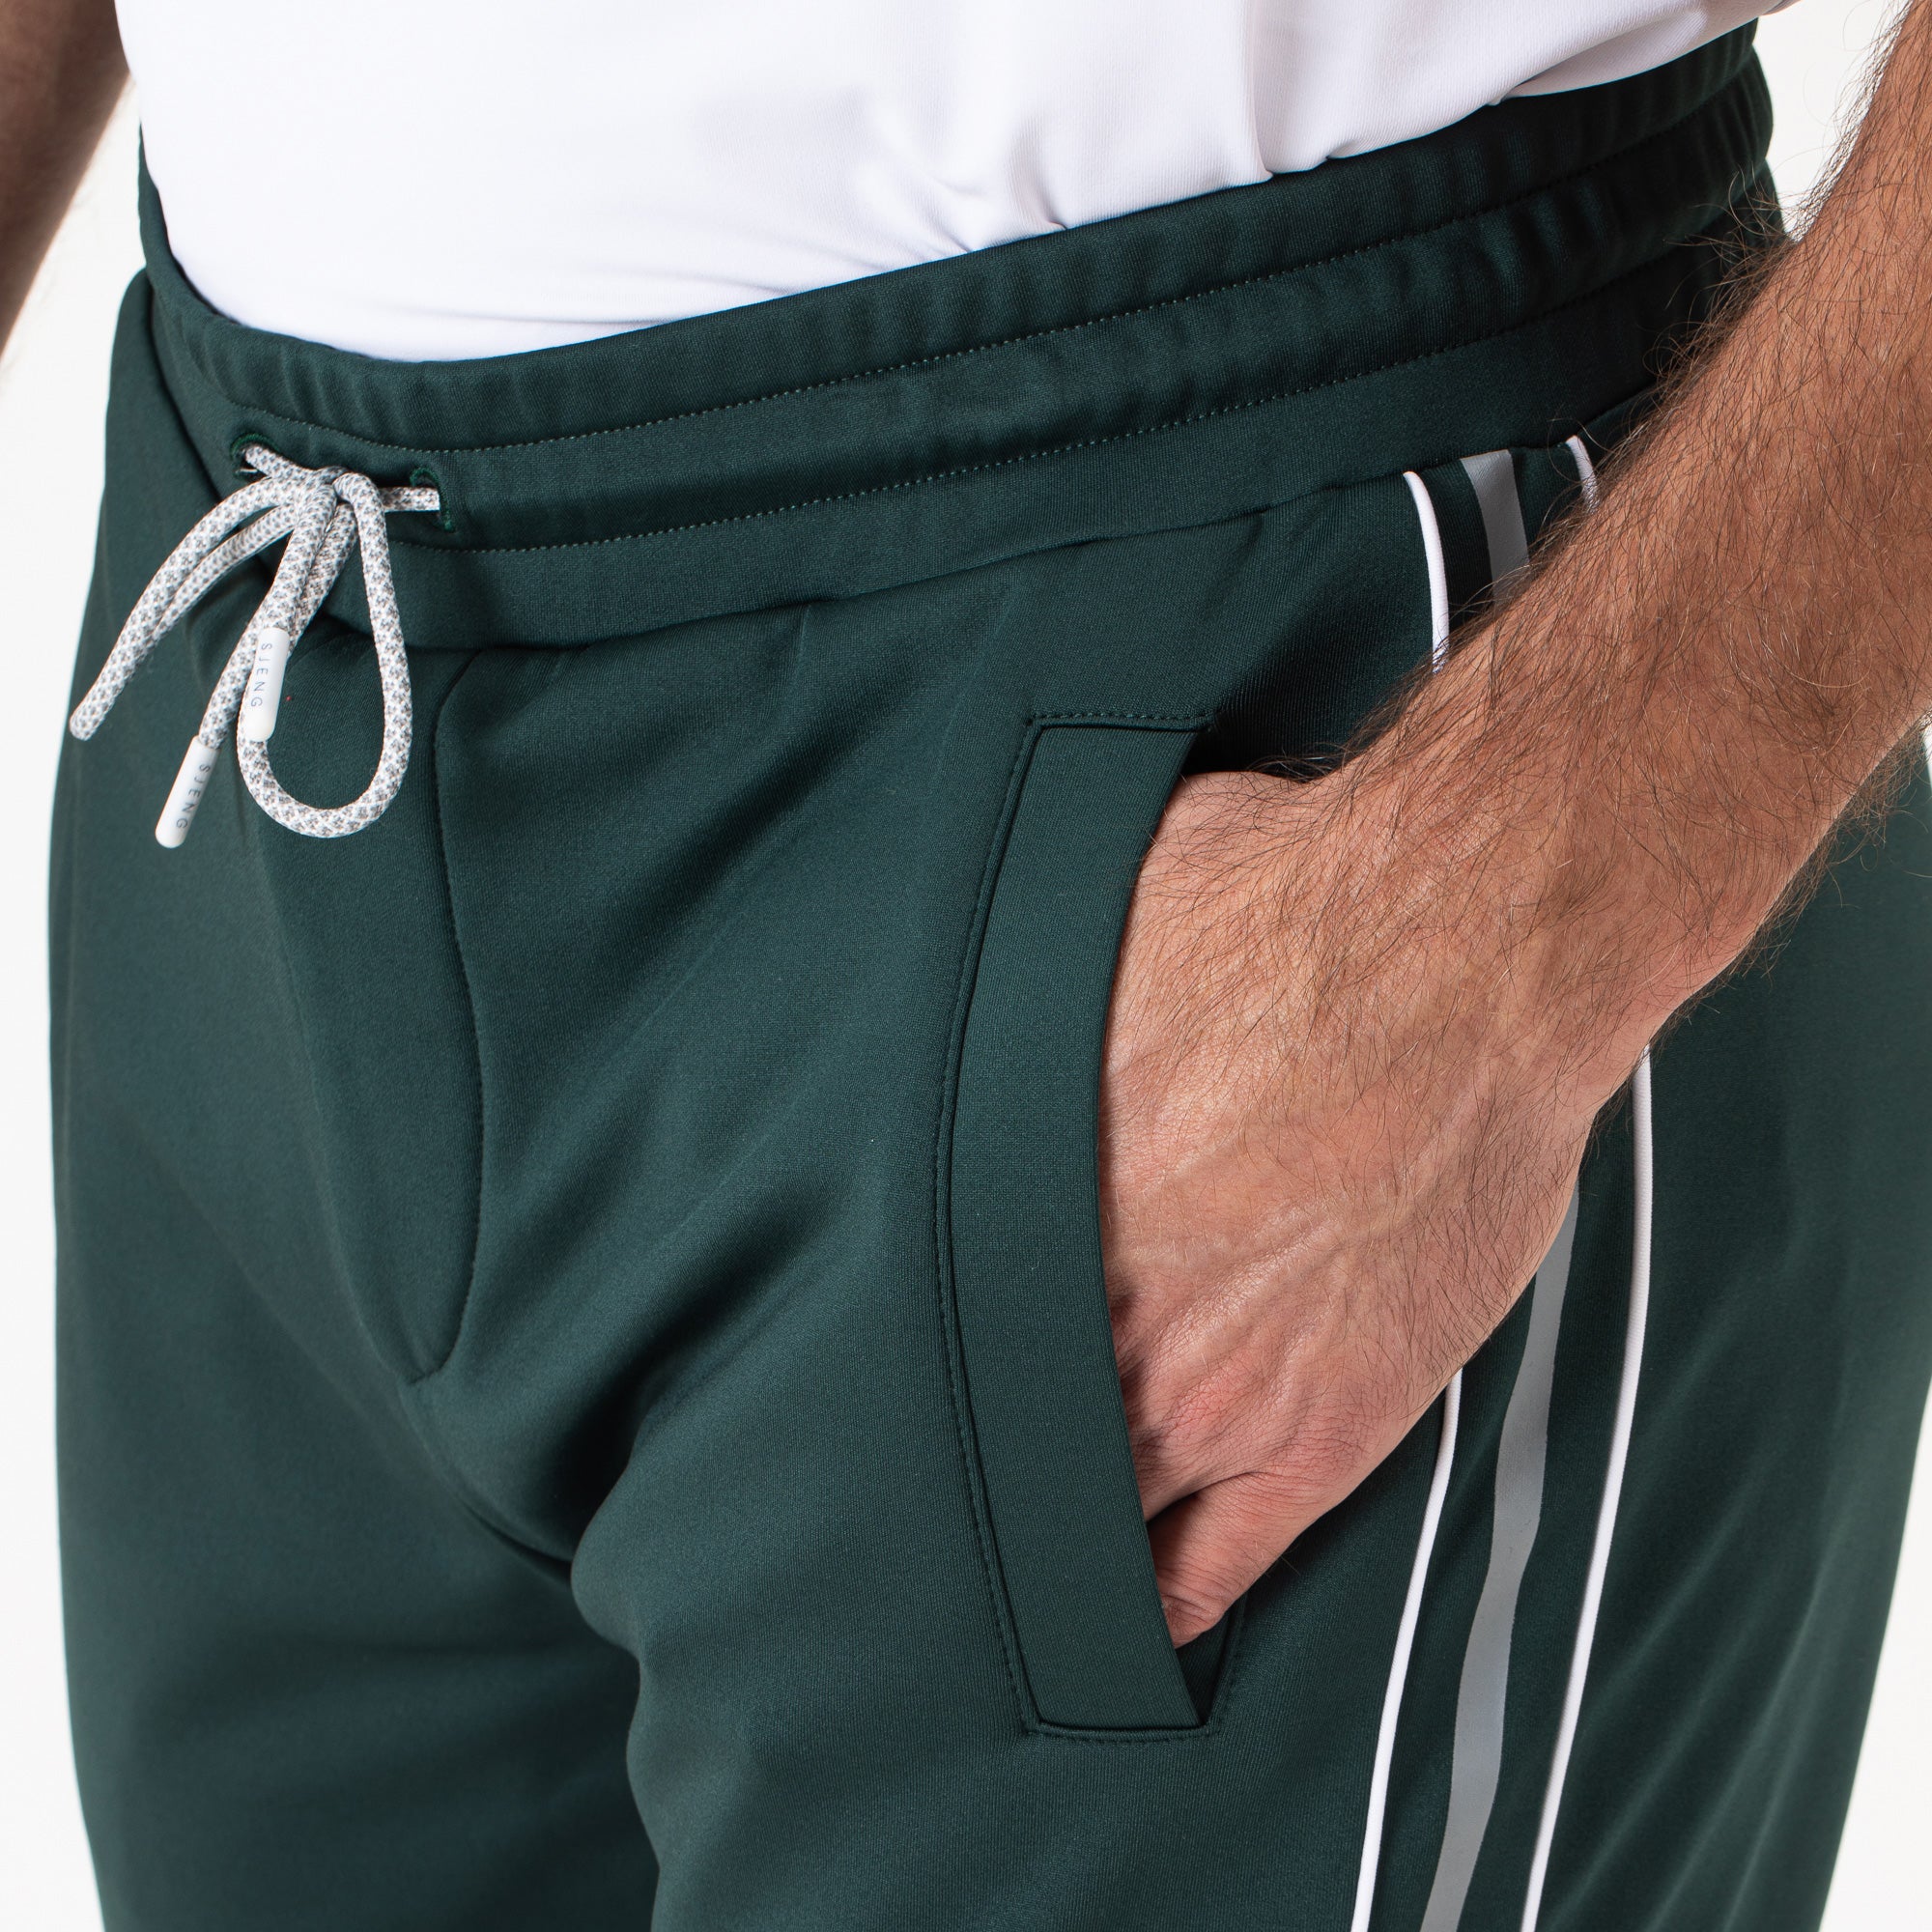 Sjeng Sports Dorsey Men's Tennis Pants - Green (3)